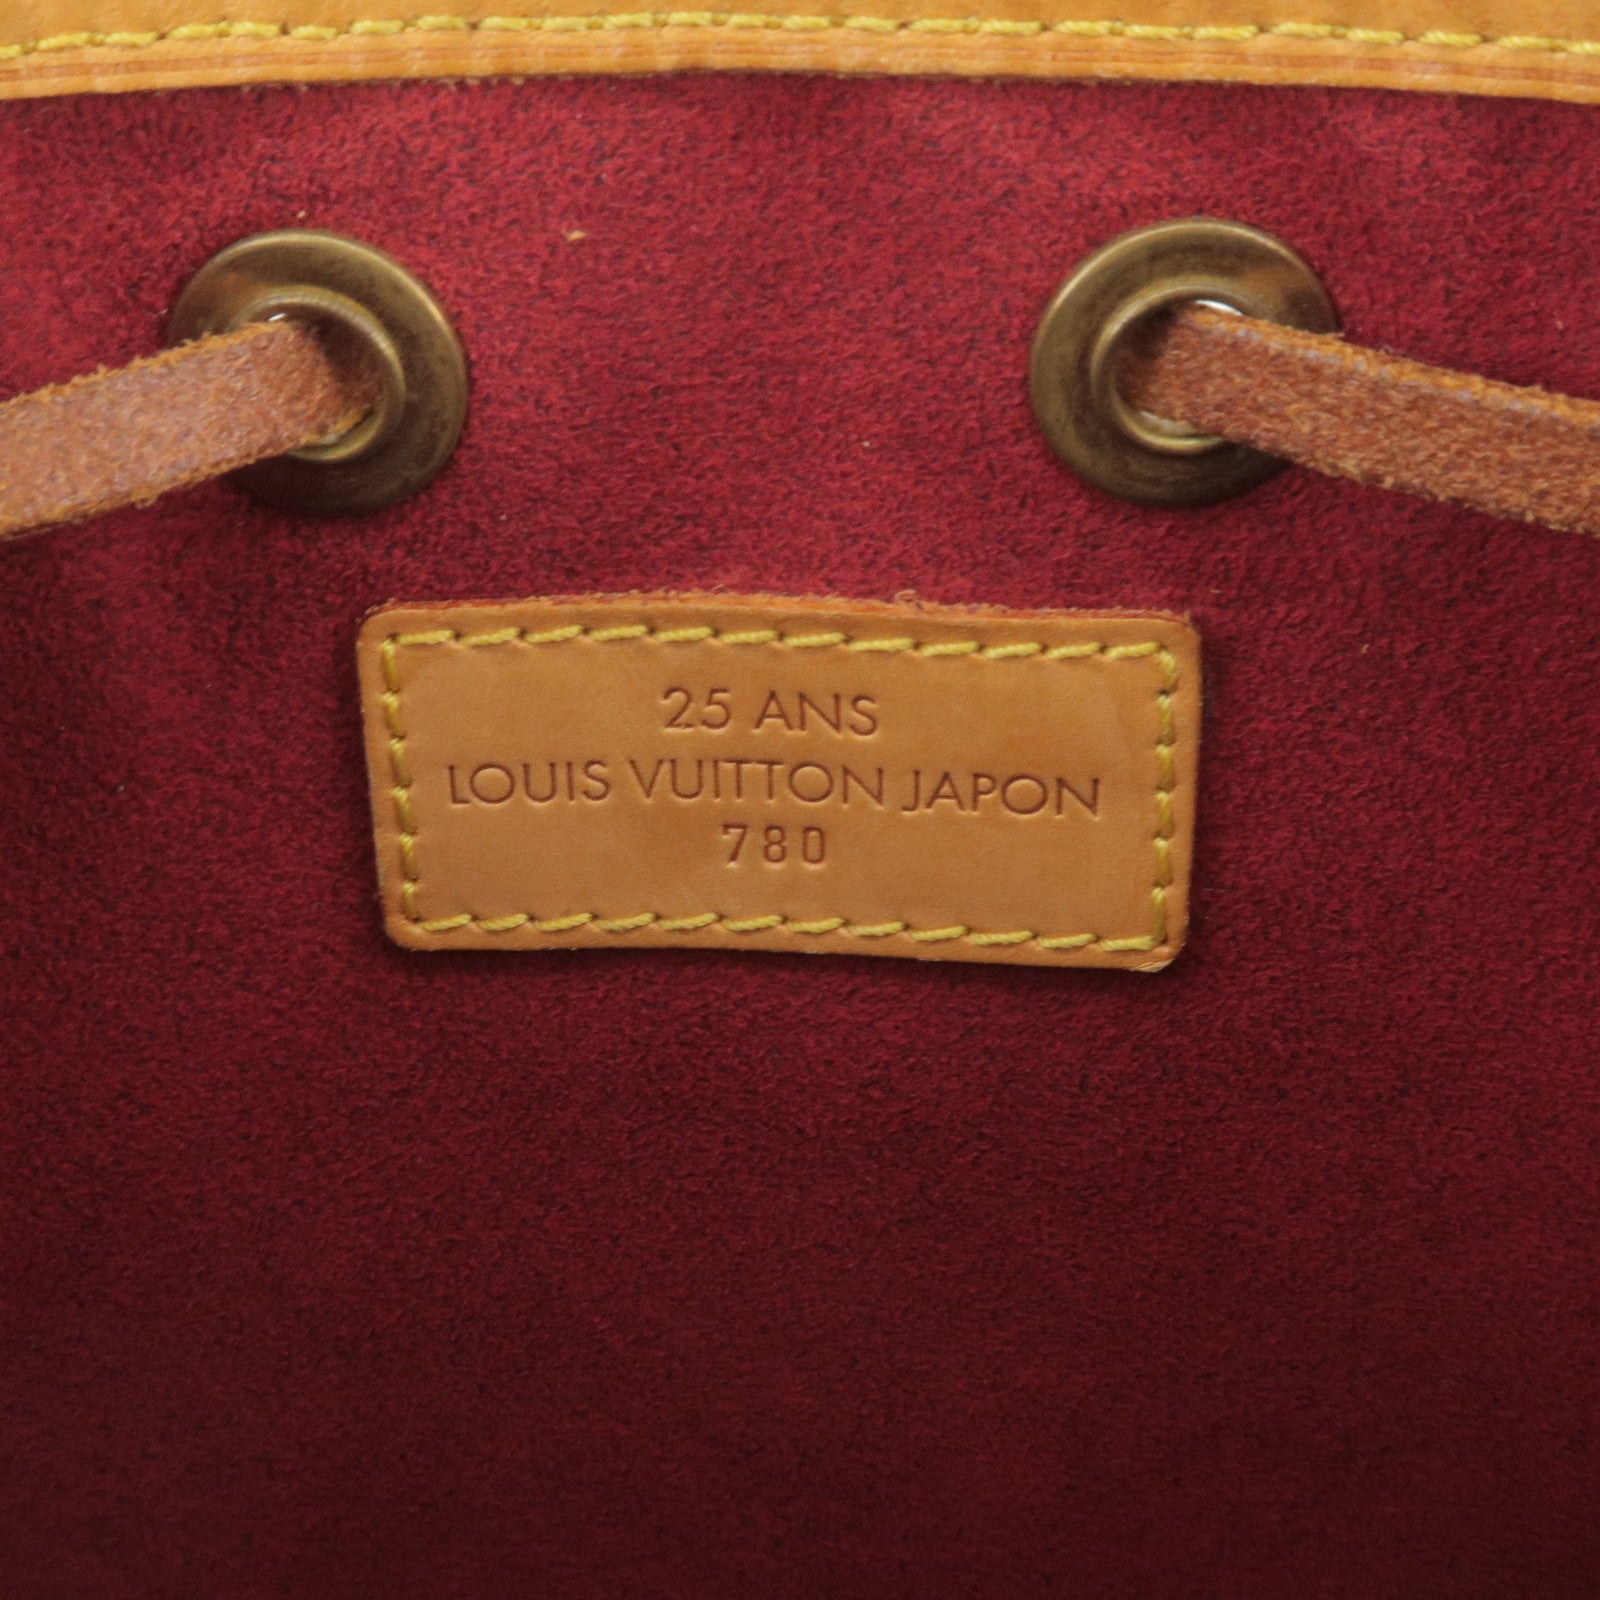 Louis - Japon - Limited - Mini - Vuitton - M99162 – Louis Vuitton Damier  Azur Speedy 25 Boston Bag Hand Bag N41534 - Monogram - Noe - Louis Vuitton  Damier Azur Speedy 25 Boston Bag Hand Bag N41534 - Edition